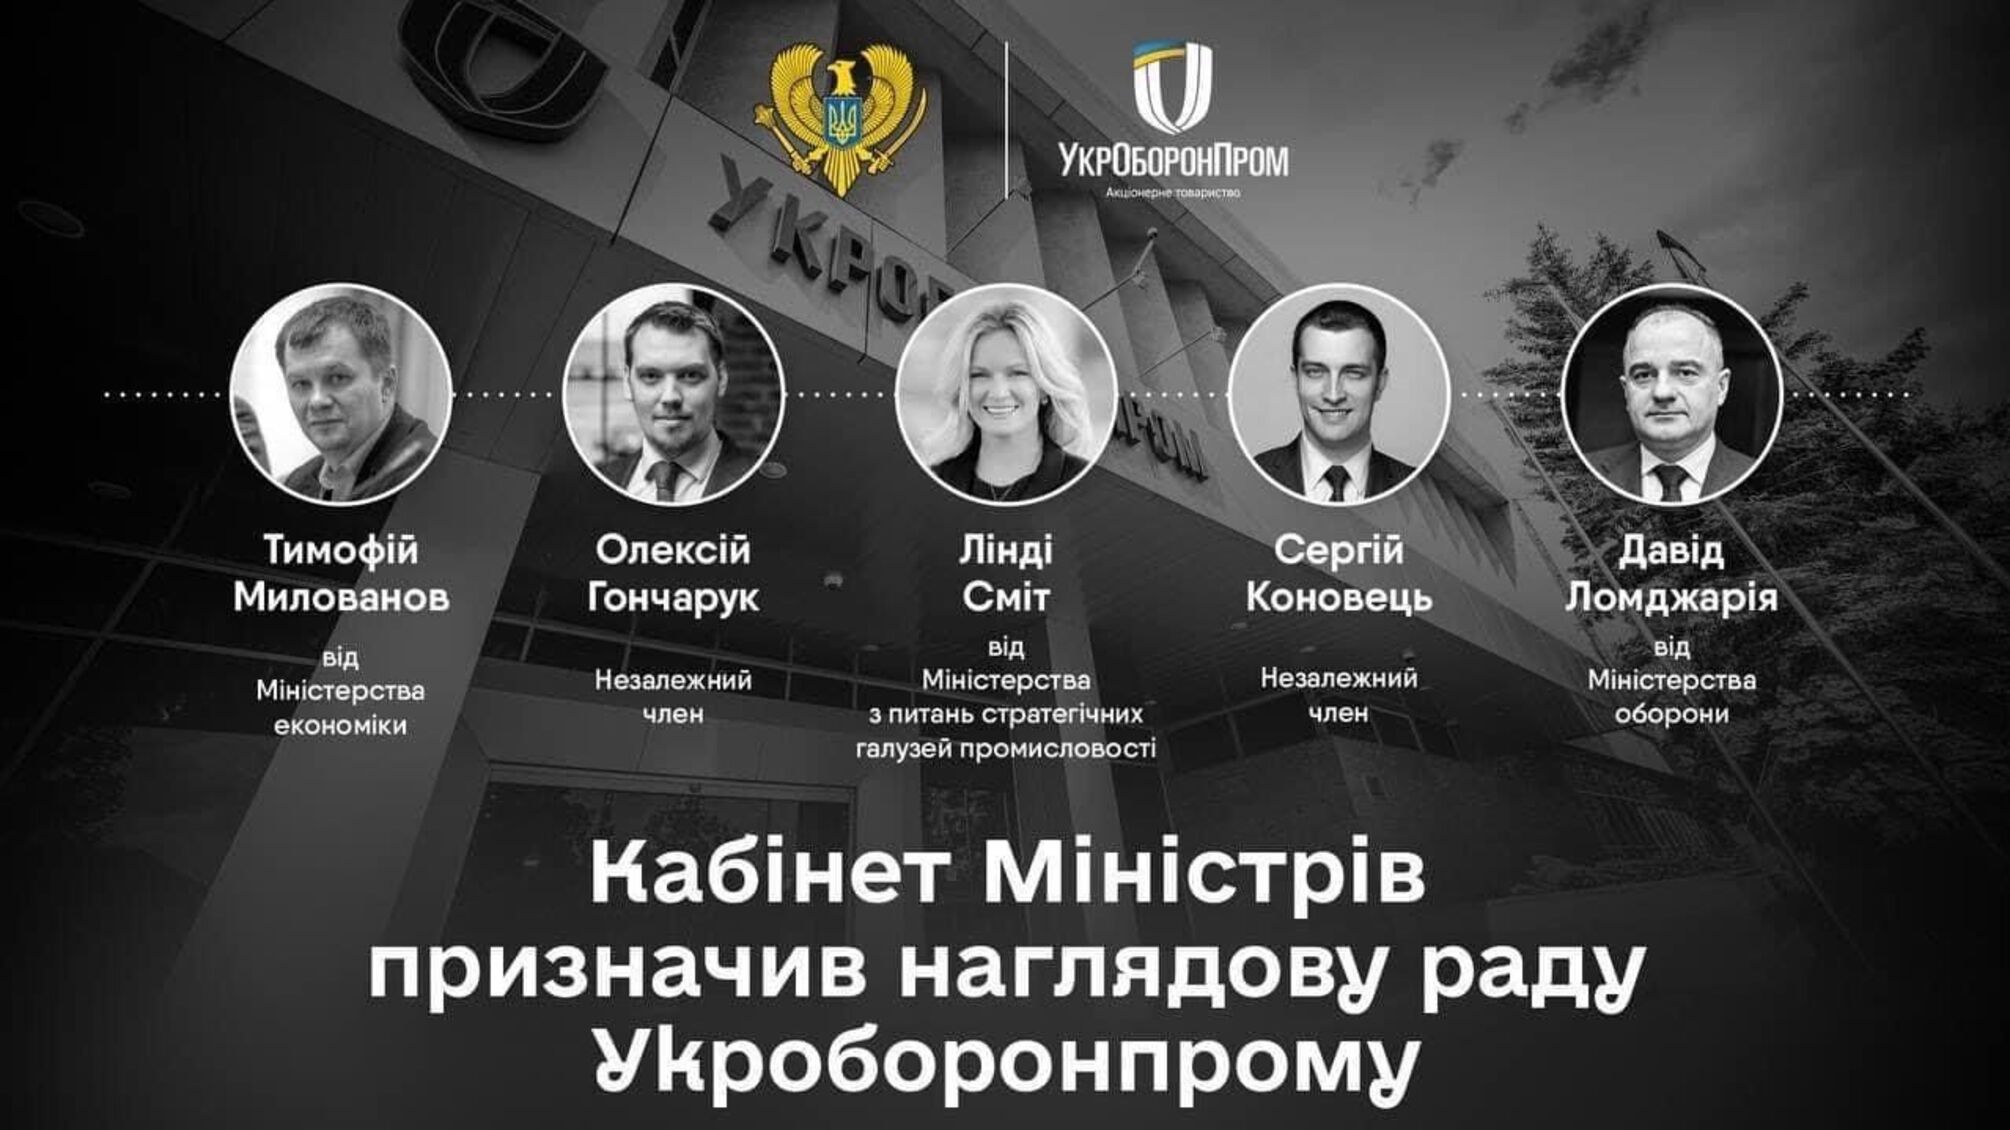 Экс-премьер Гончарук стал членом наблюдательного совета Укроборонпрома